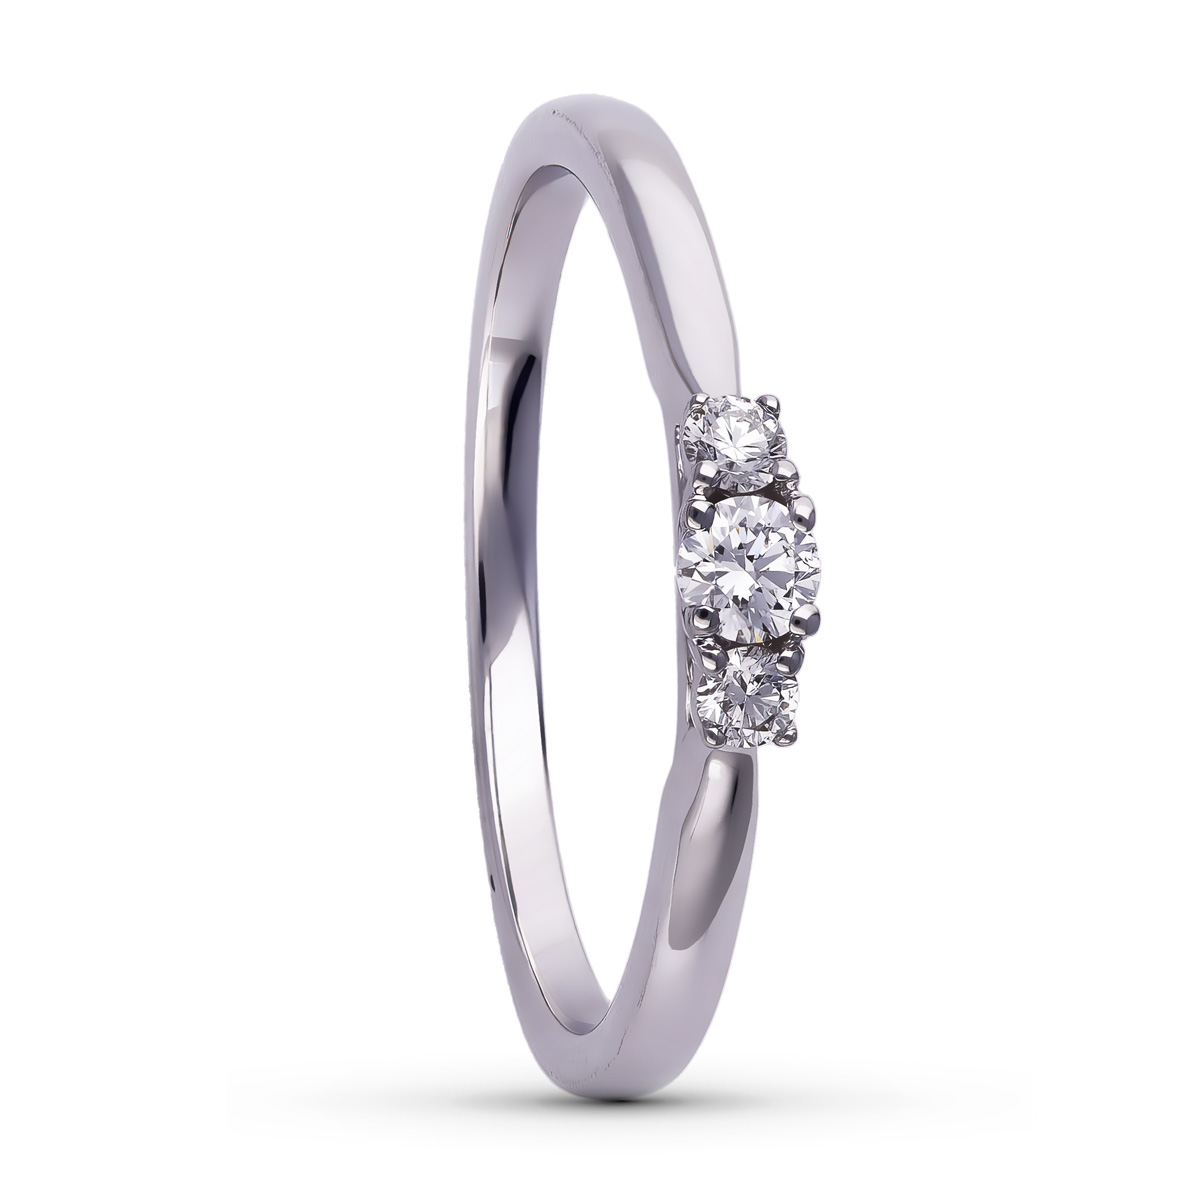 030785201-anillo-oro-blanco-3-diamantes-joyeria-acebo